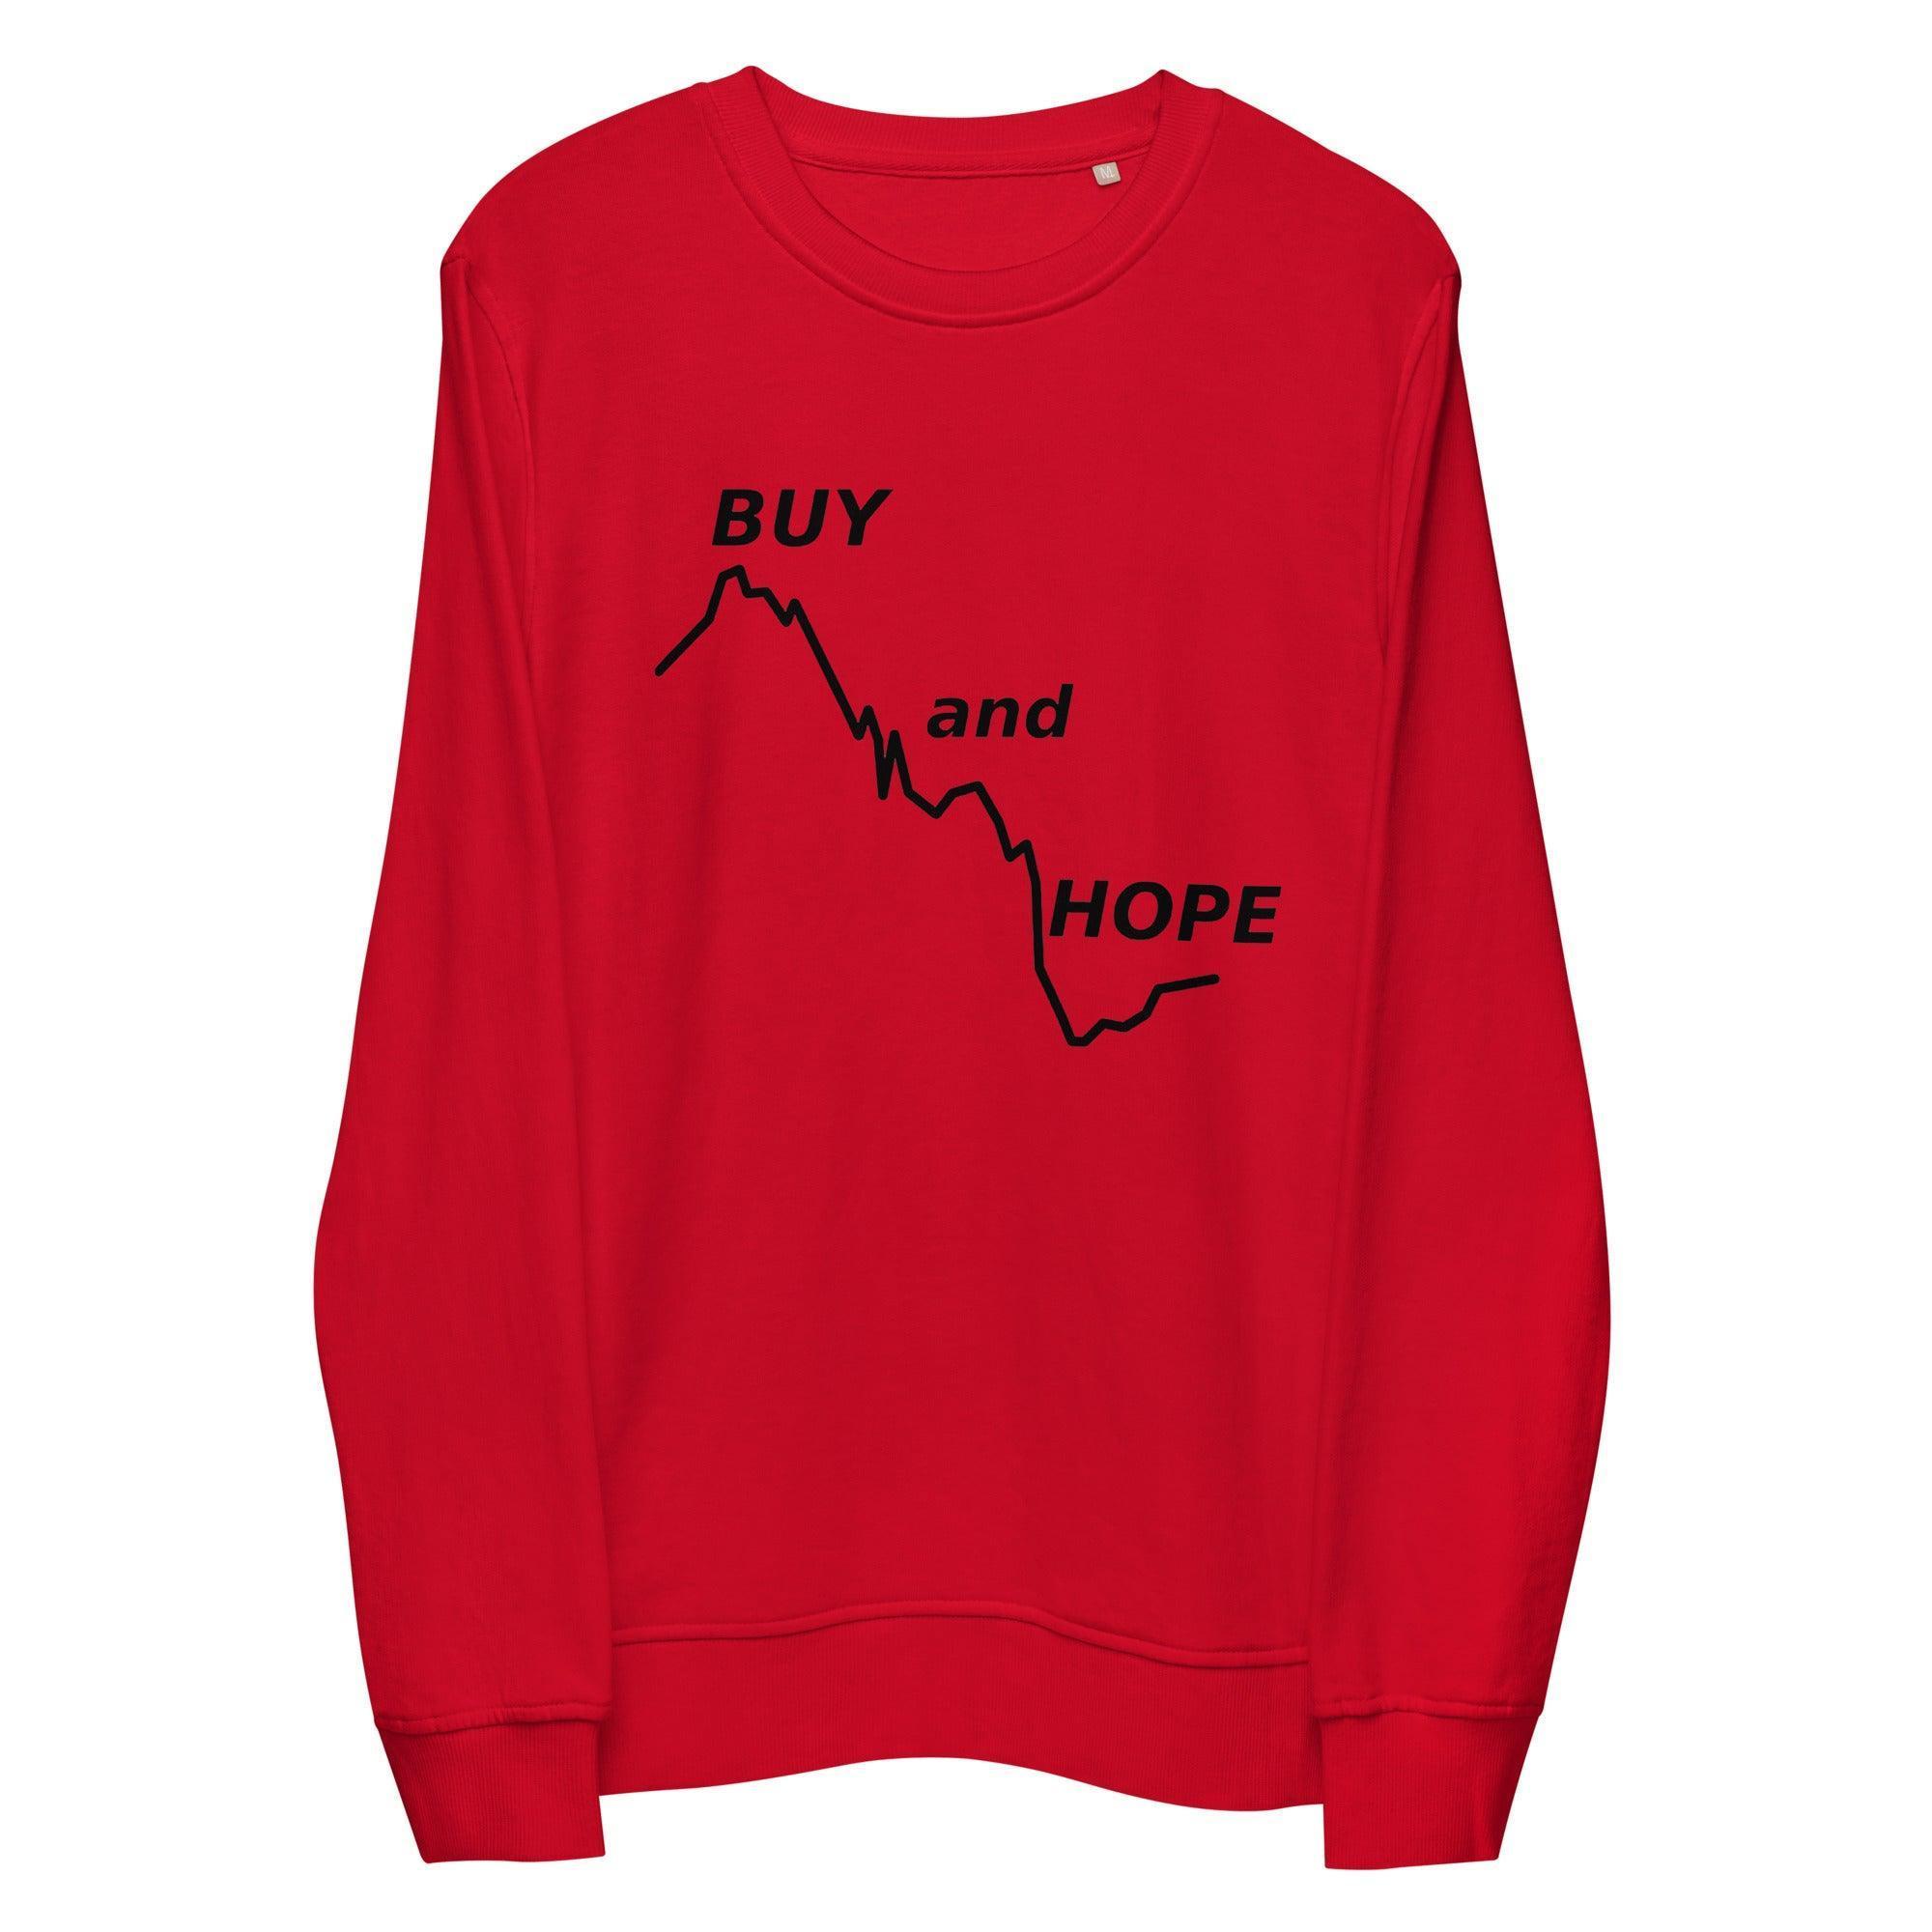 Buy & Hope Sweatshirt - InvestmenTees